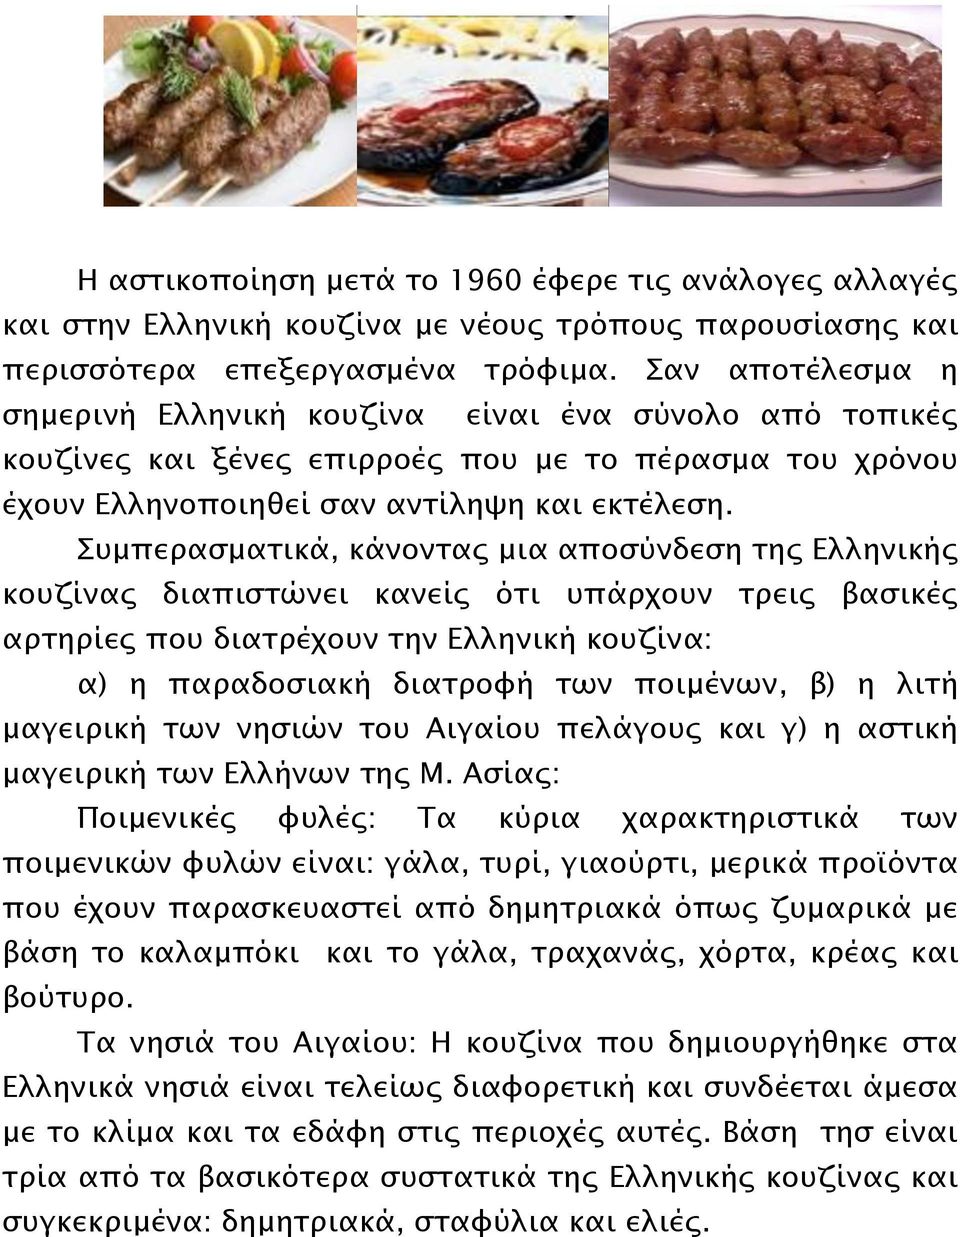 Συμπερασματικά, κάνοντας μια αποσύνδεση της Ελληνικής κουζίνας διαπιστώνει κανείς ότι υπάρχουν τρεις βασικές αρτηρίες που διατρέχουν την Ελληνική κουζίνα: α) η παραδοσιακή διατροφή των ποιμένων, β) η